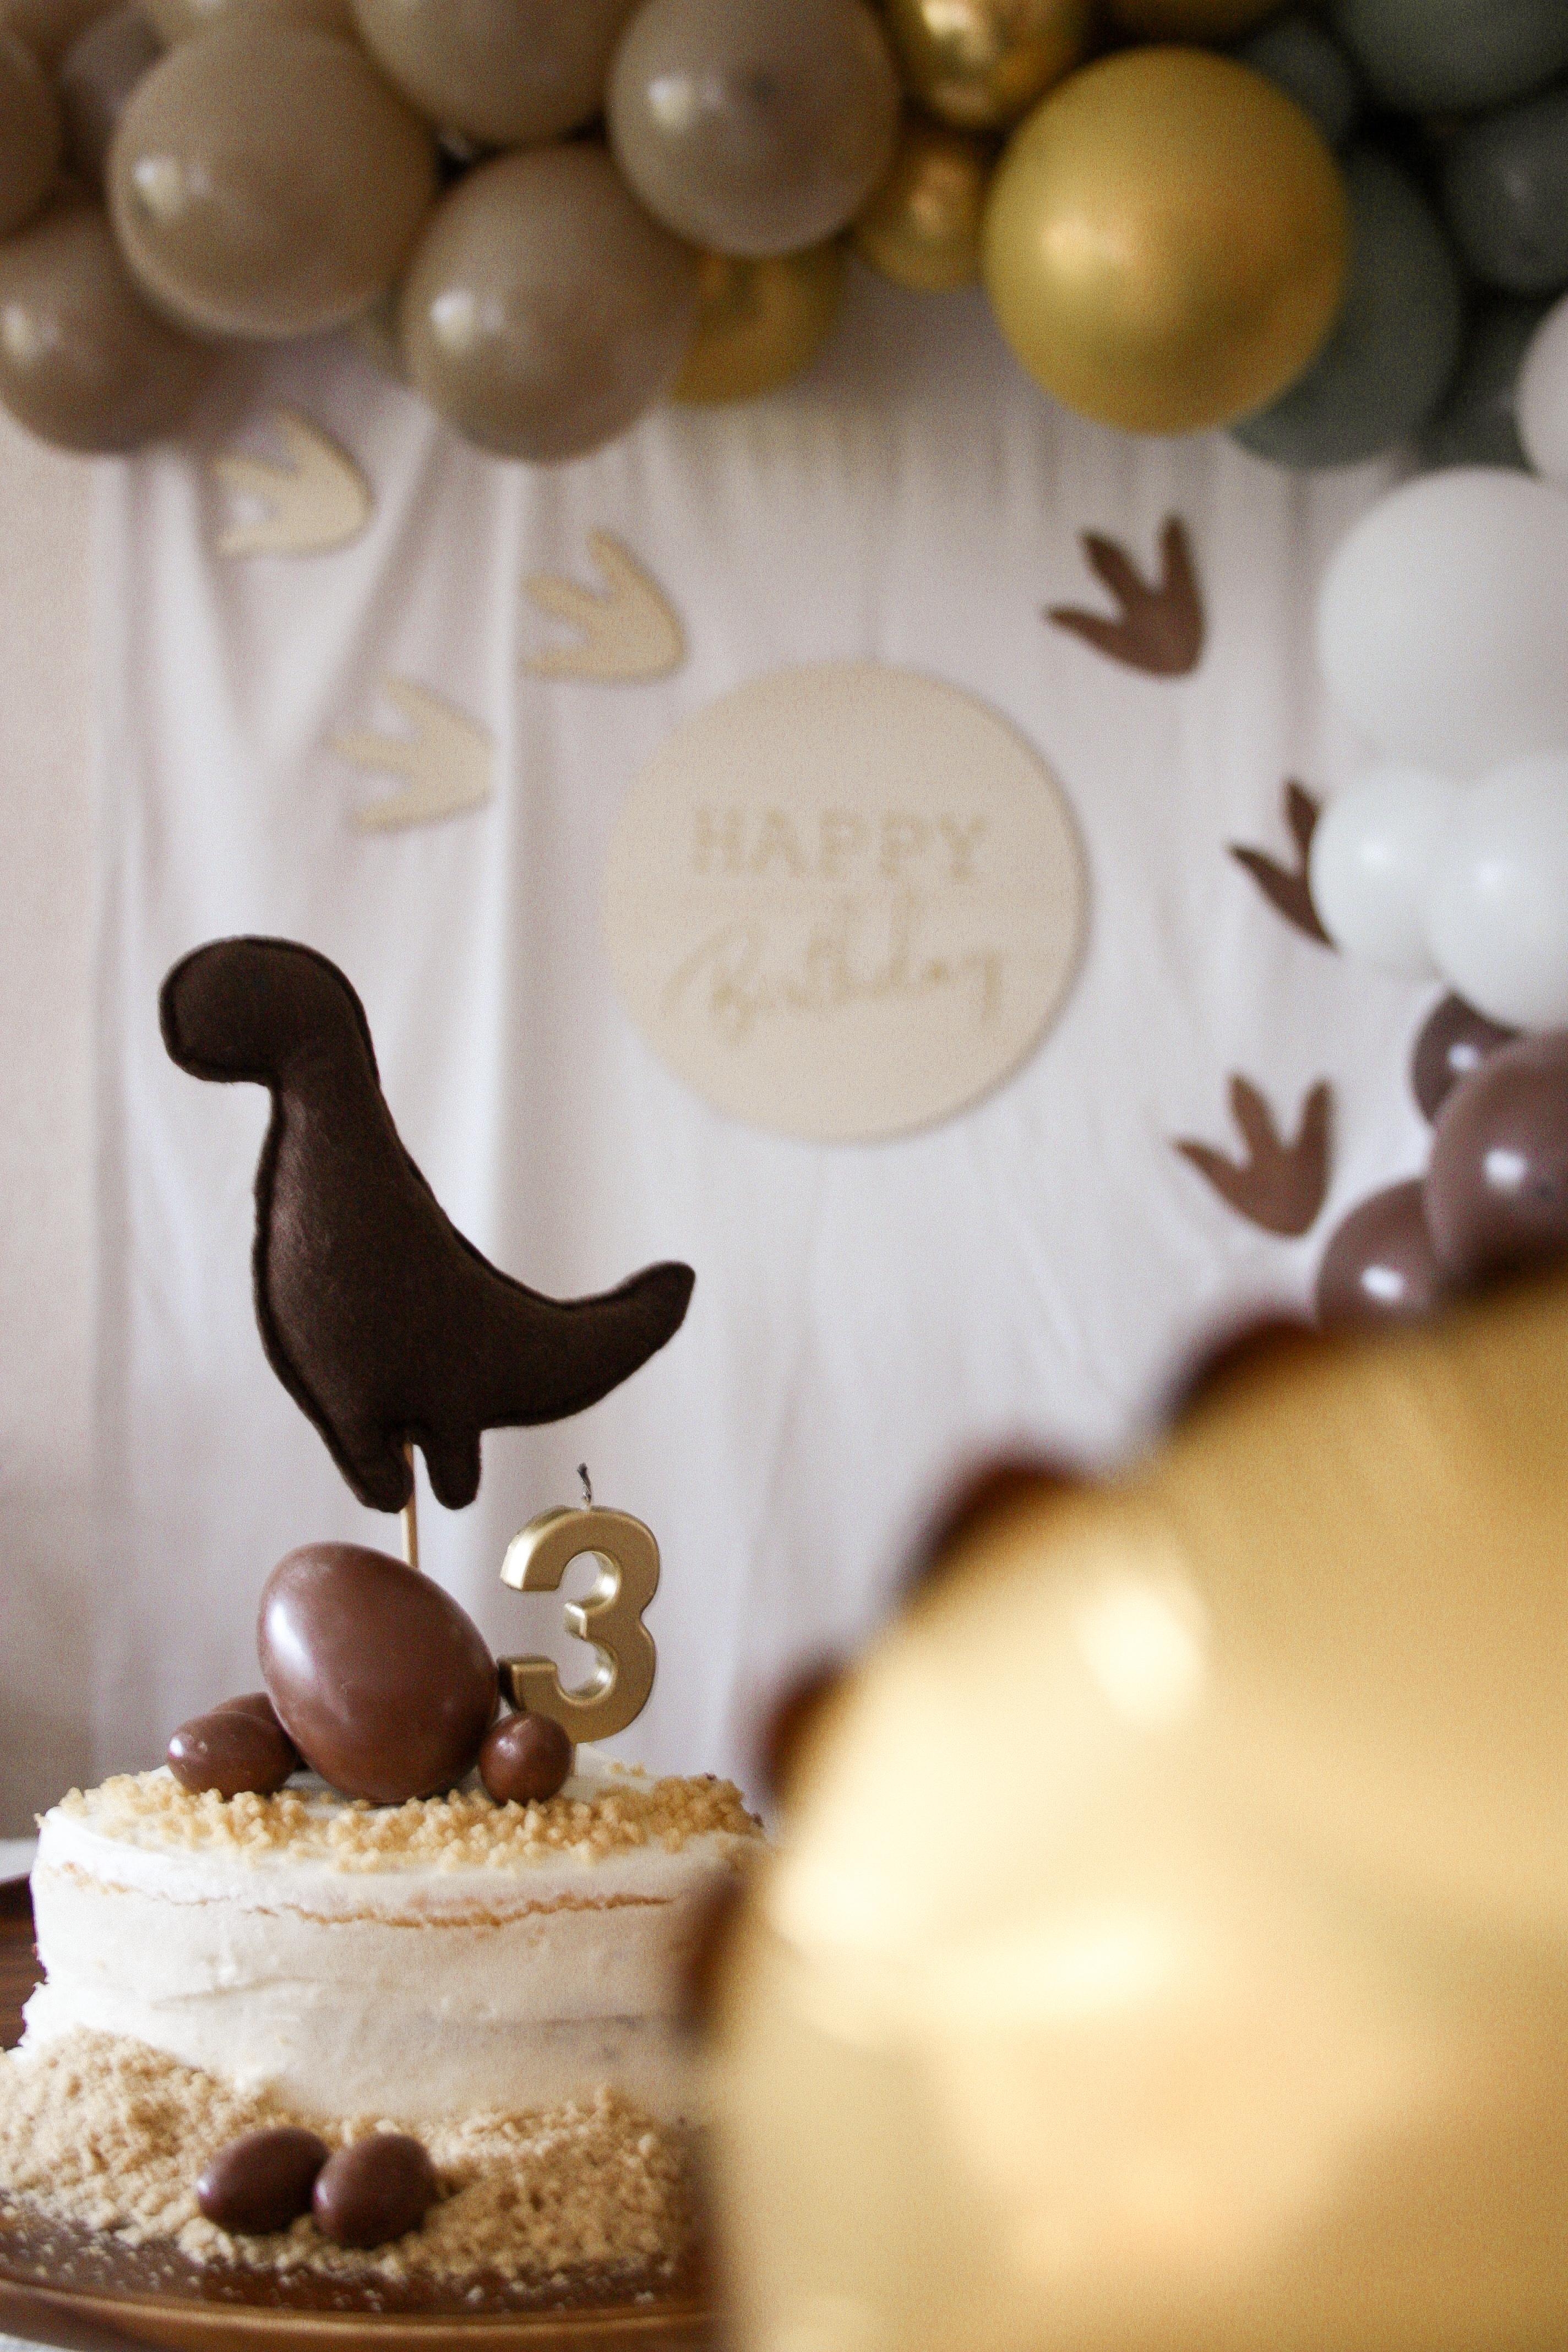 ♡ Happy Birthday kleiner Dino ♡

#foodchallenge #Naschkatze #geburtstag #diy #backen #cake 